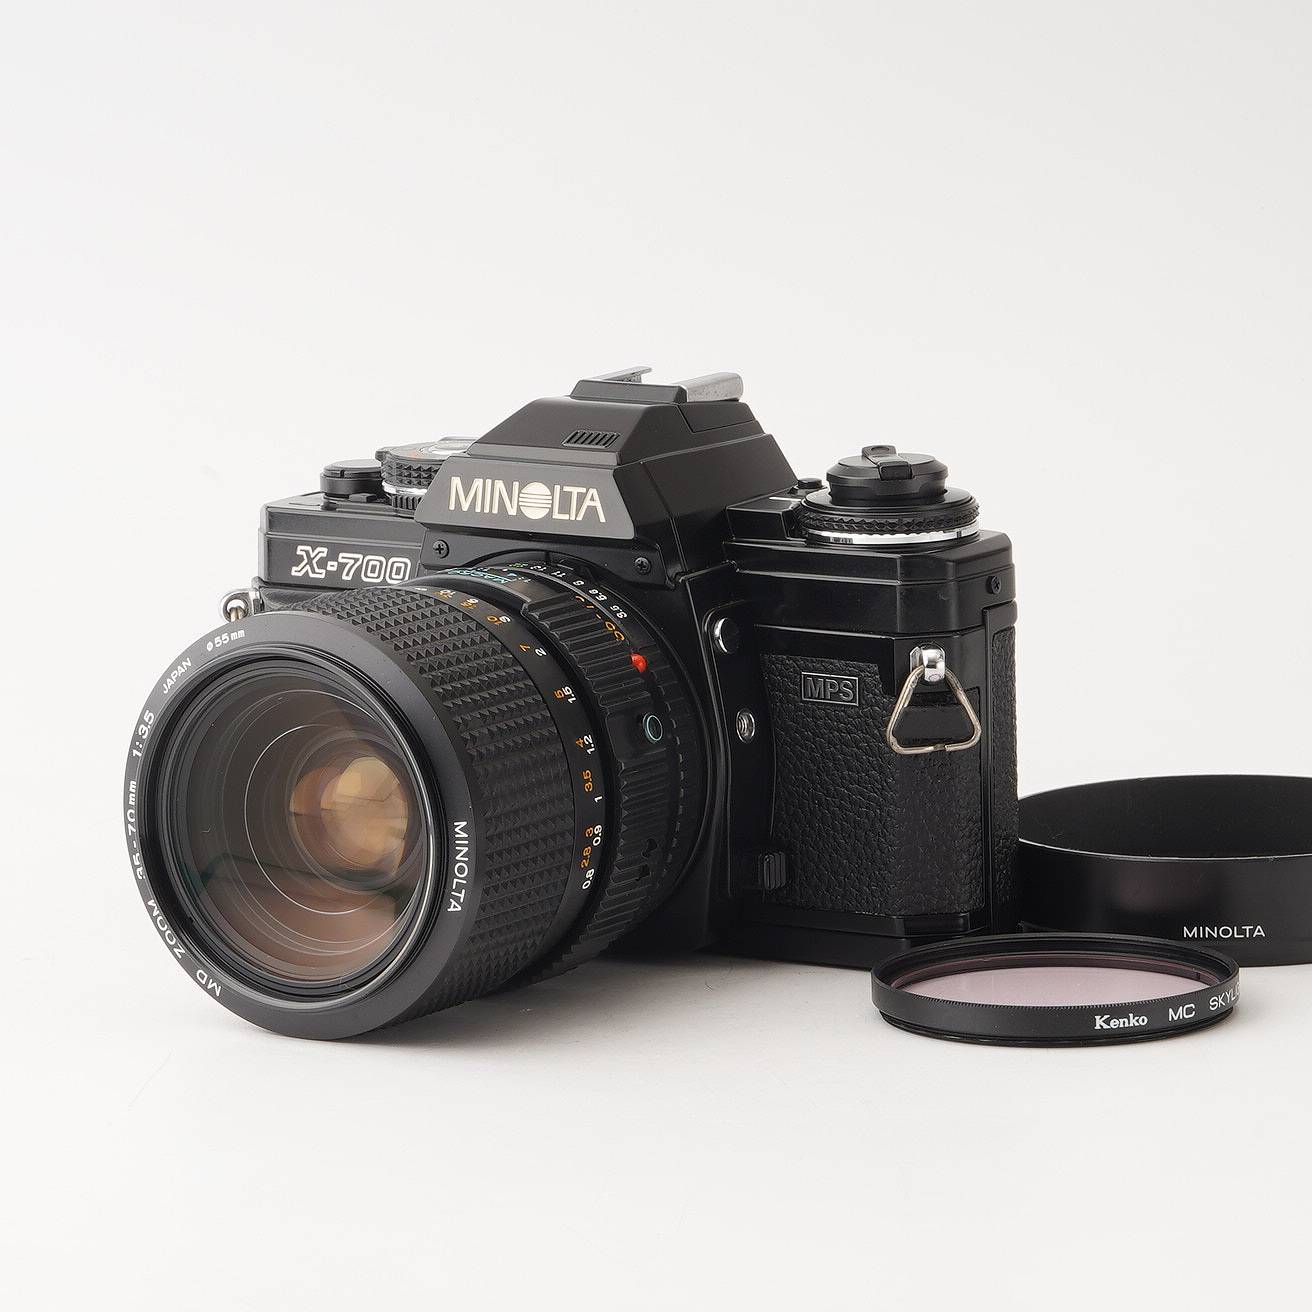 MINOLTA ミノルタ X-700 レンズ3本付き 『3年保証』 - フィルムカメラ